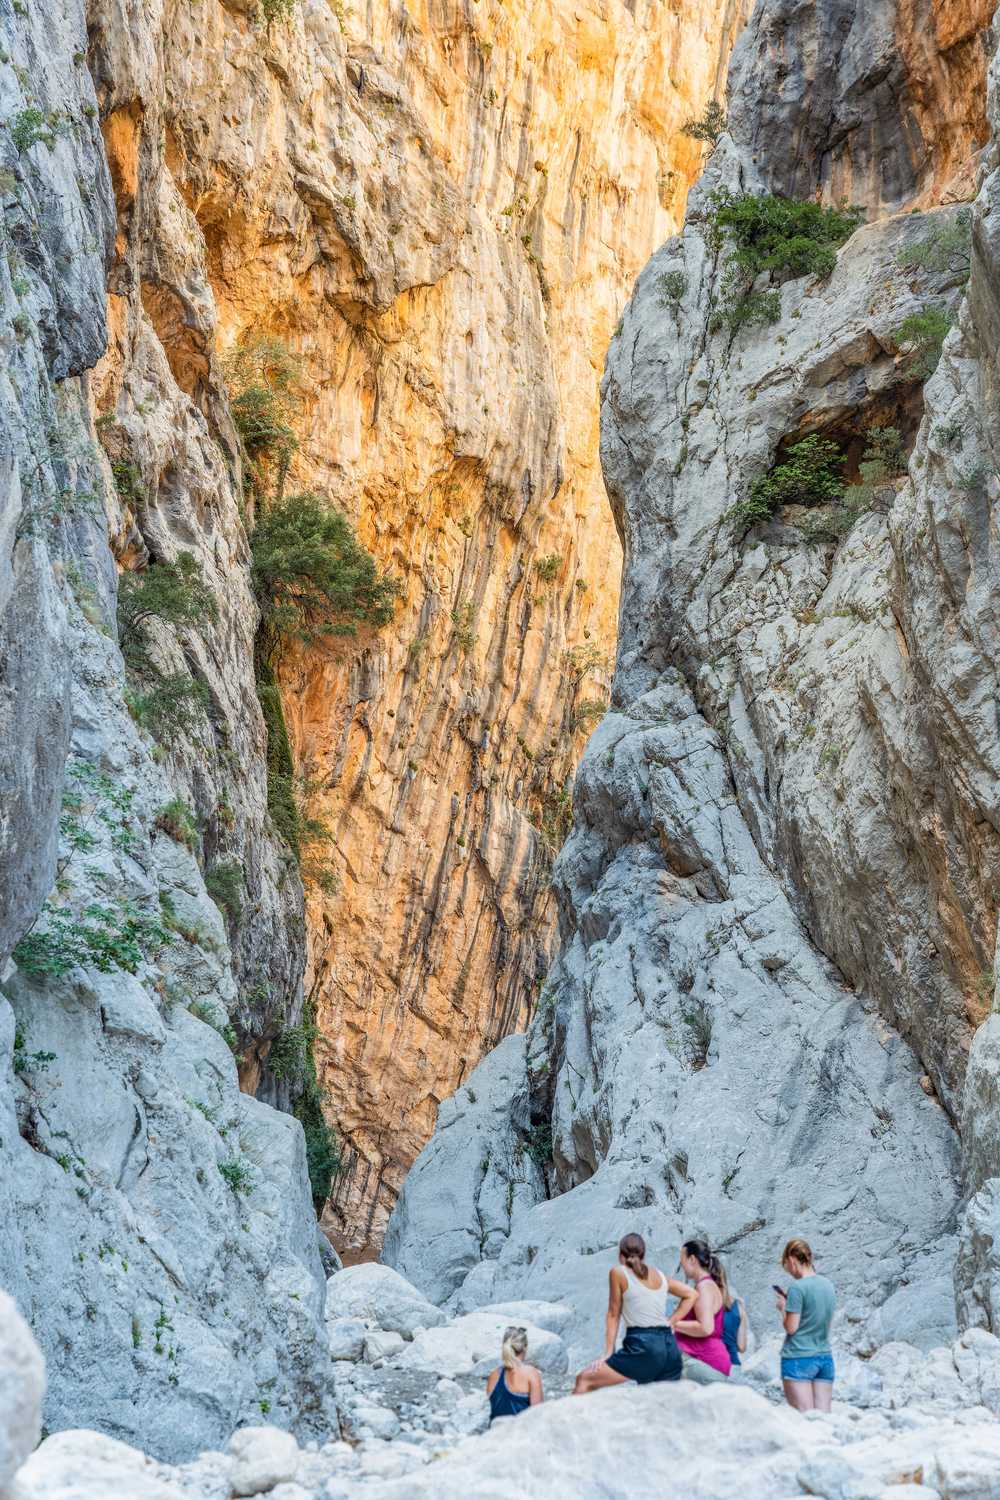 Le canyon le plus profond d'Europe, situé dans la région de Supramonte en Sardaigne Italie